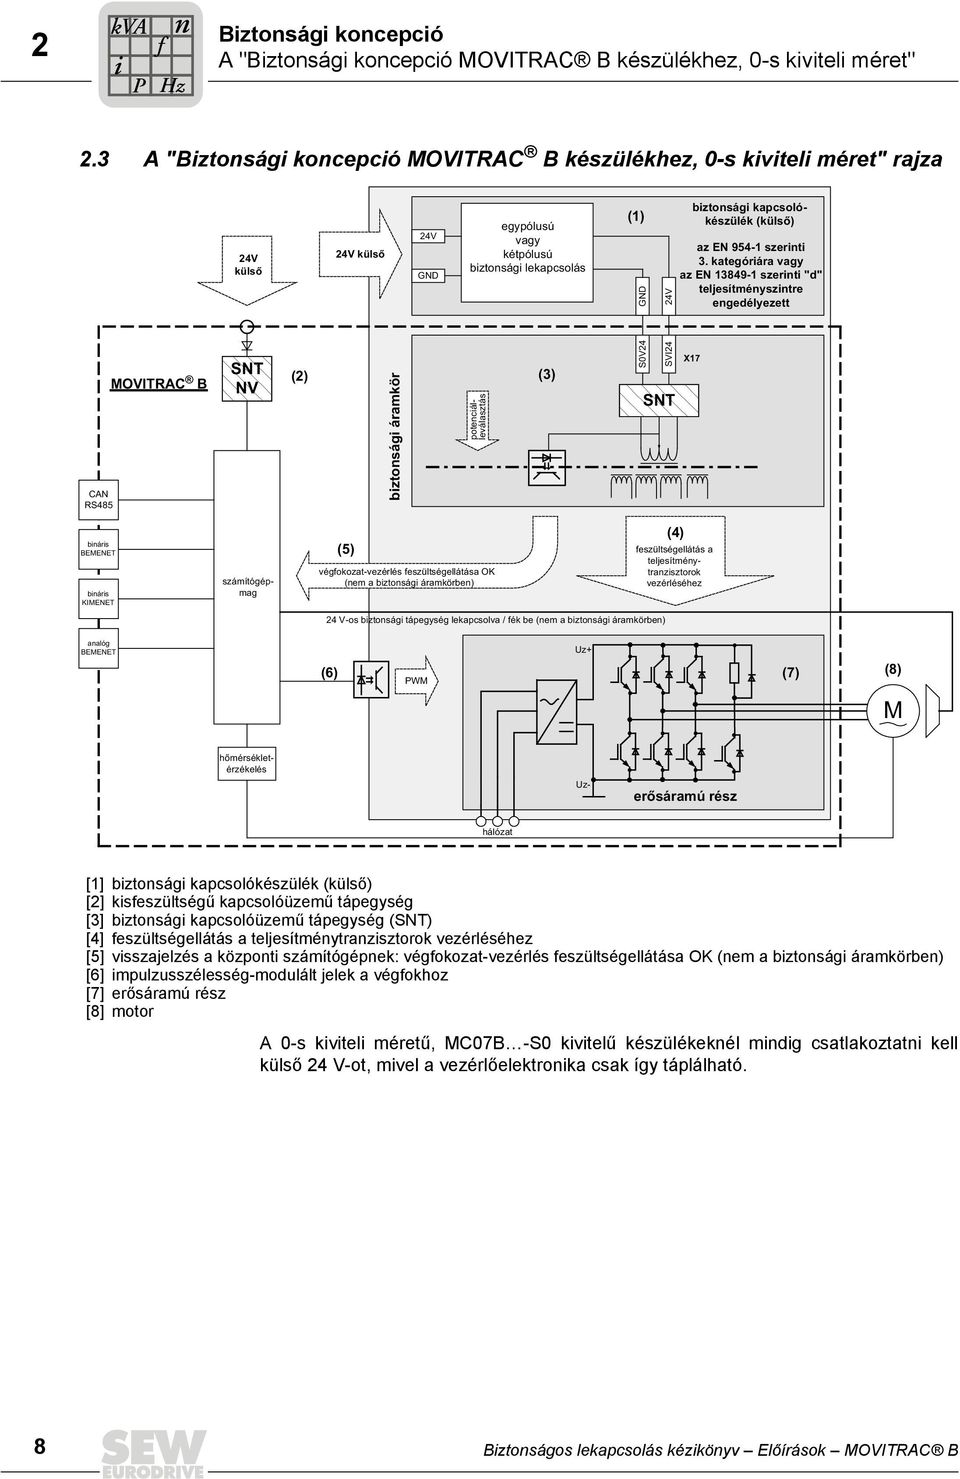 lekapcsolás potenciálleválasztás (3) (1) S0V24 GND SVI24 24V SNT biztonsági kapcsolókészülék (külső) az EN 954-1 szerinti 3.